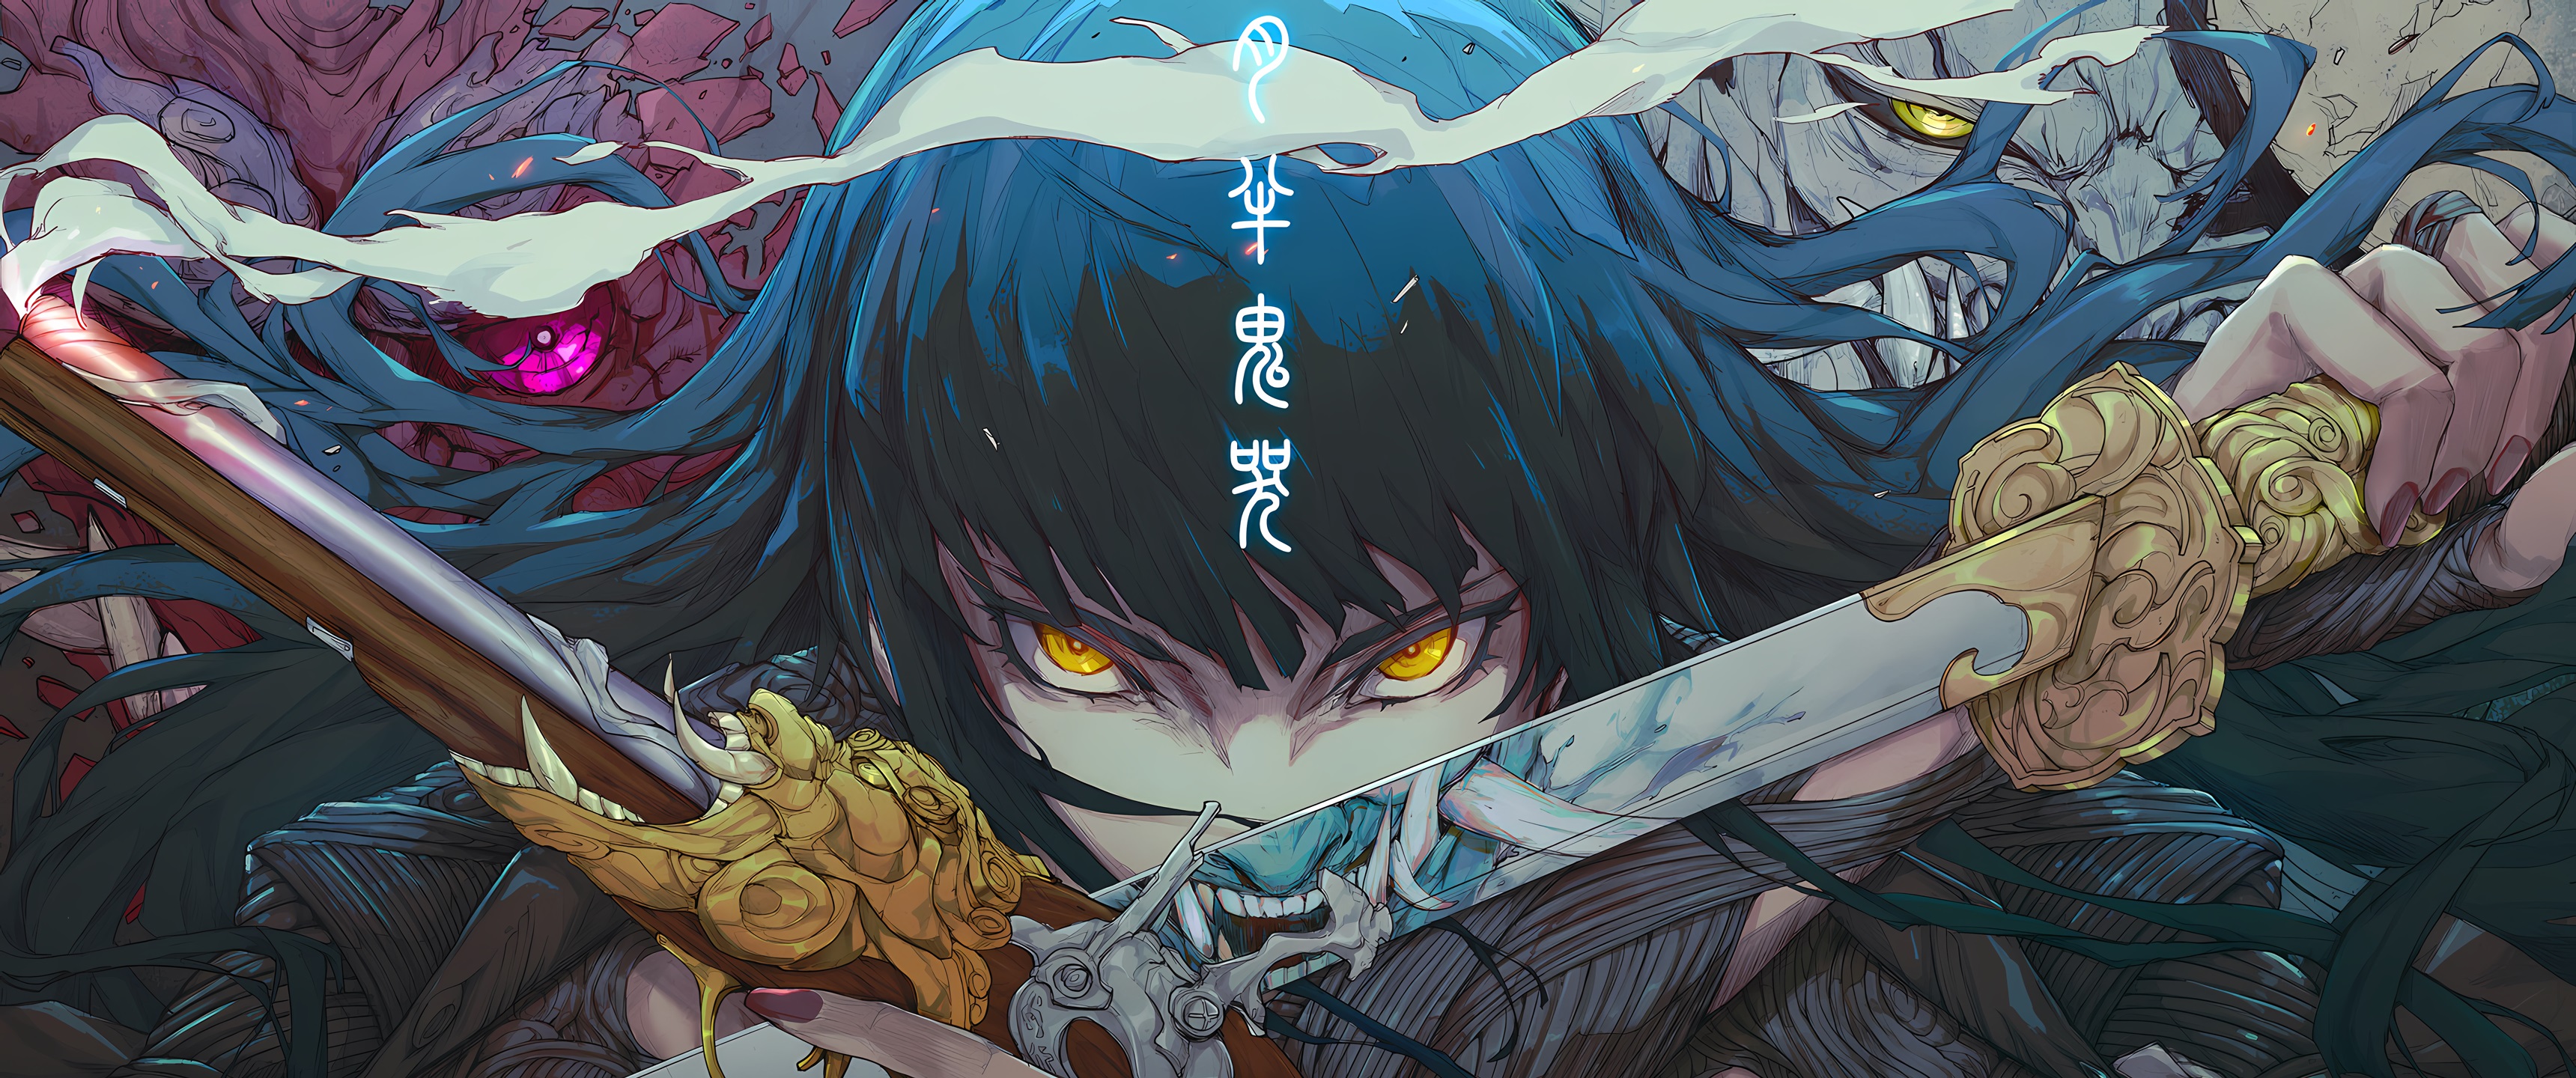 Kanji Long Hair Dragon Blue Hair Yellow Eyes Demon Face Sword Oni Gun Looking At Viewer Smoke Japane 3440x1440